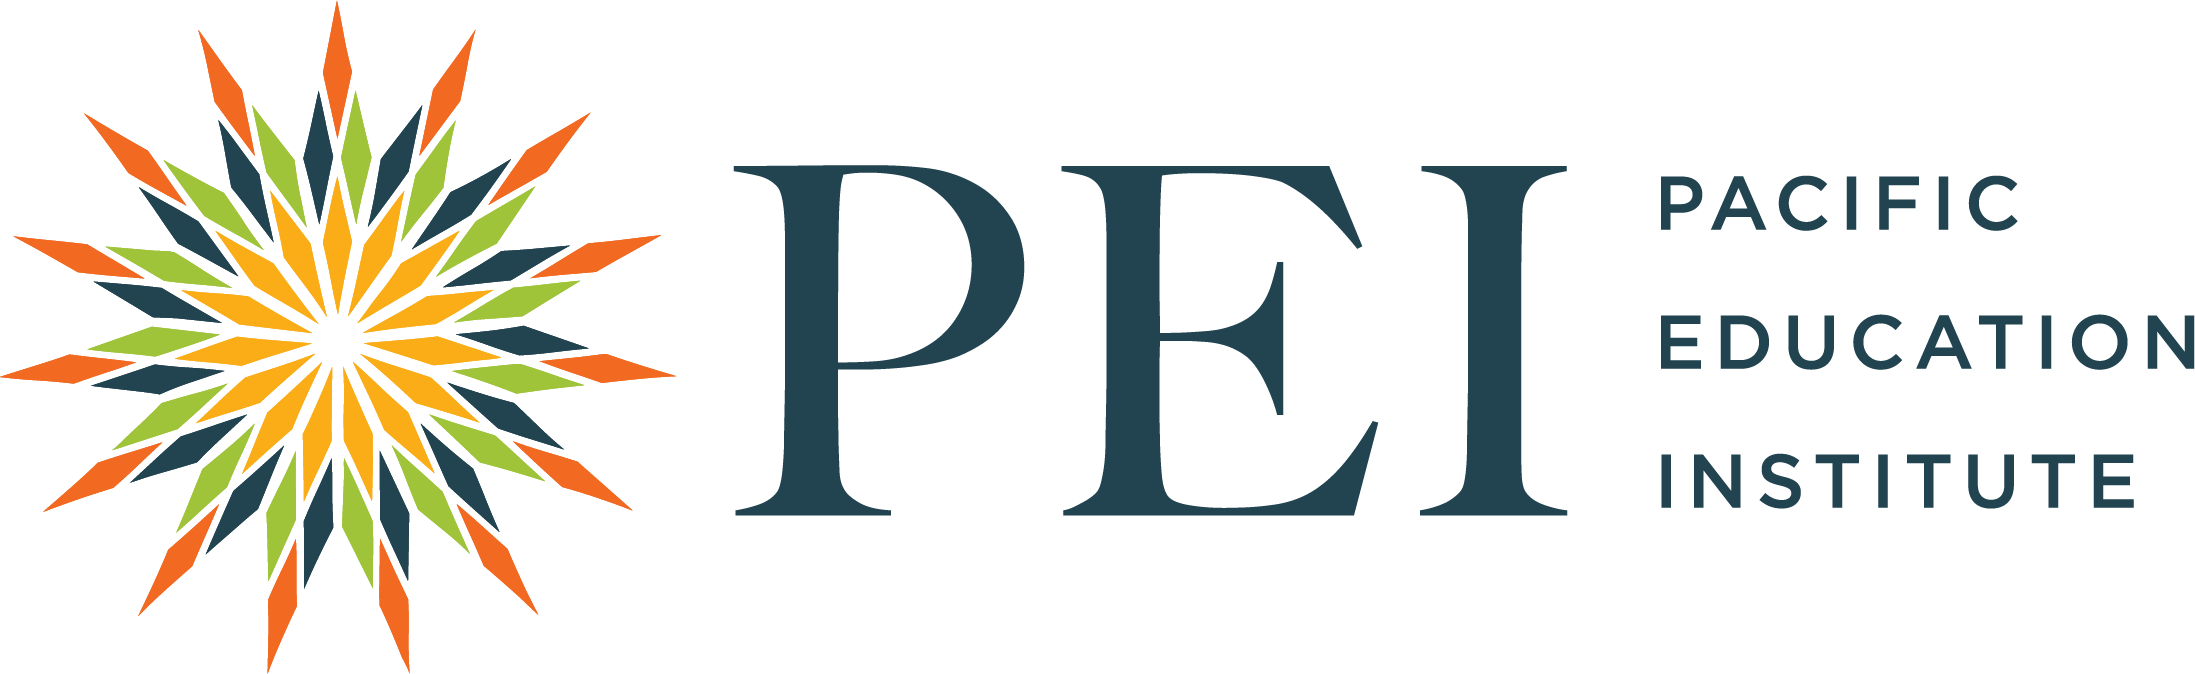 Pacific Education Institute logo